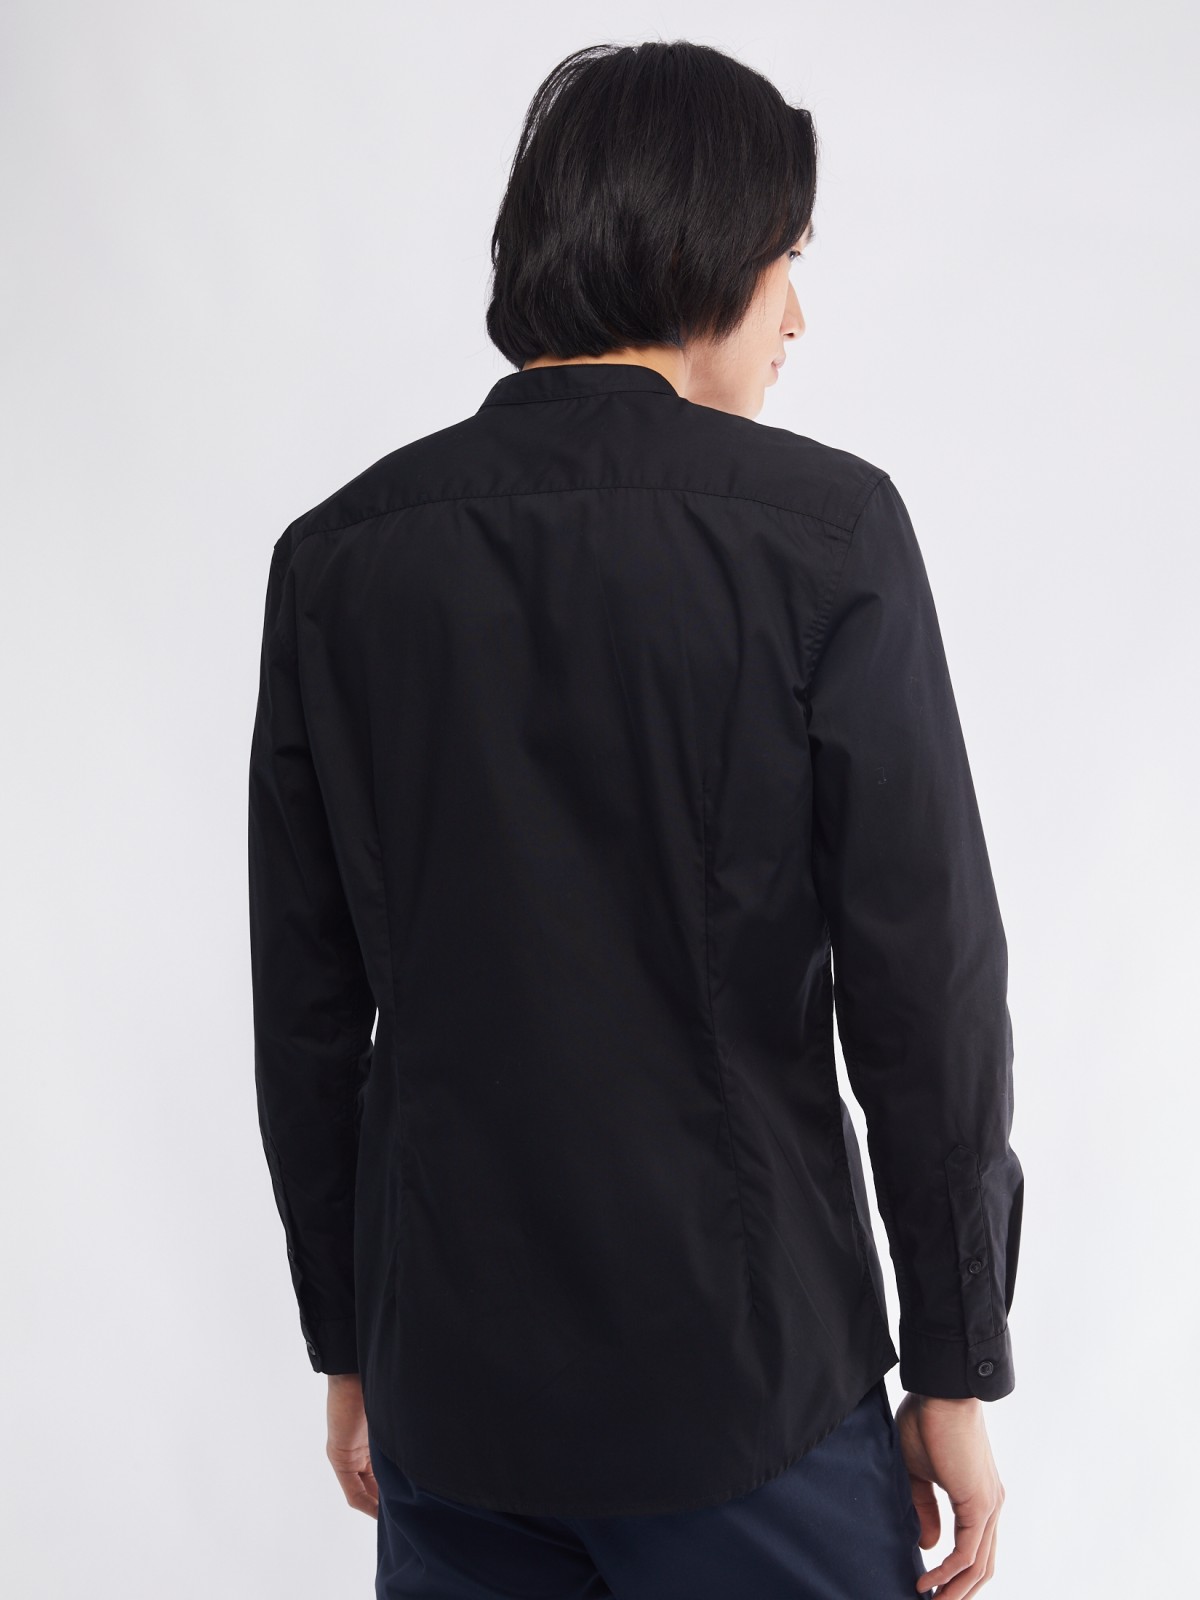 Офисная рубашка с воротником-стойкой и длинным рукавом zolla 01411217W072, цвет черный, размер S - фото 6